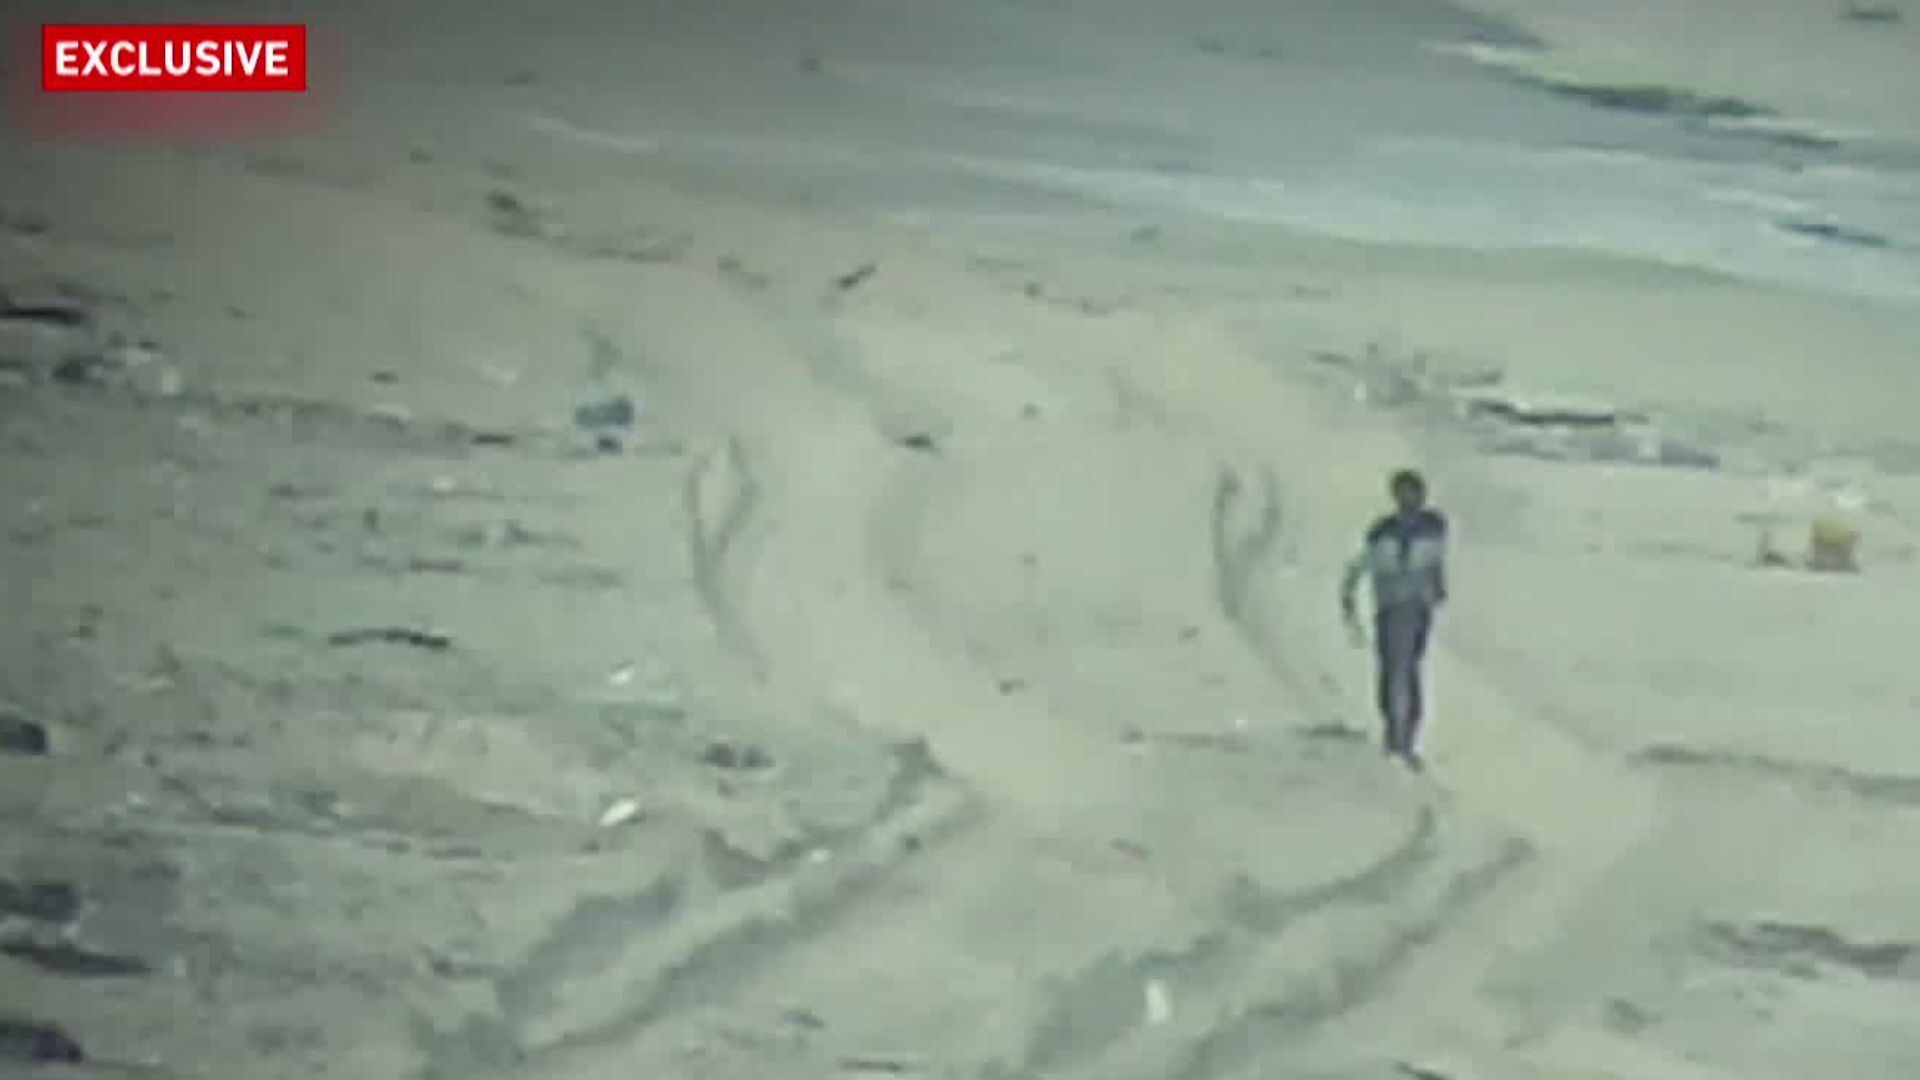 Des soldats israéliens tirent et tuent deux Palestiniens non armés à Gaza : Vidéo |  Guerre d'Israël contre Gaza Actualités